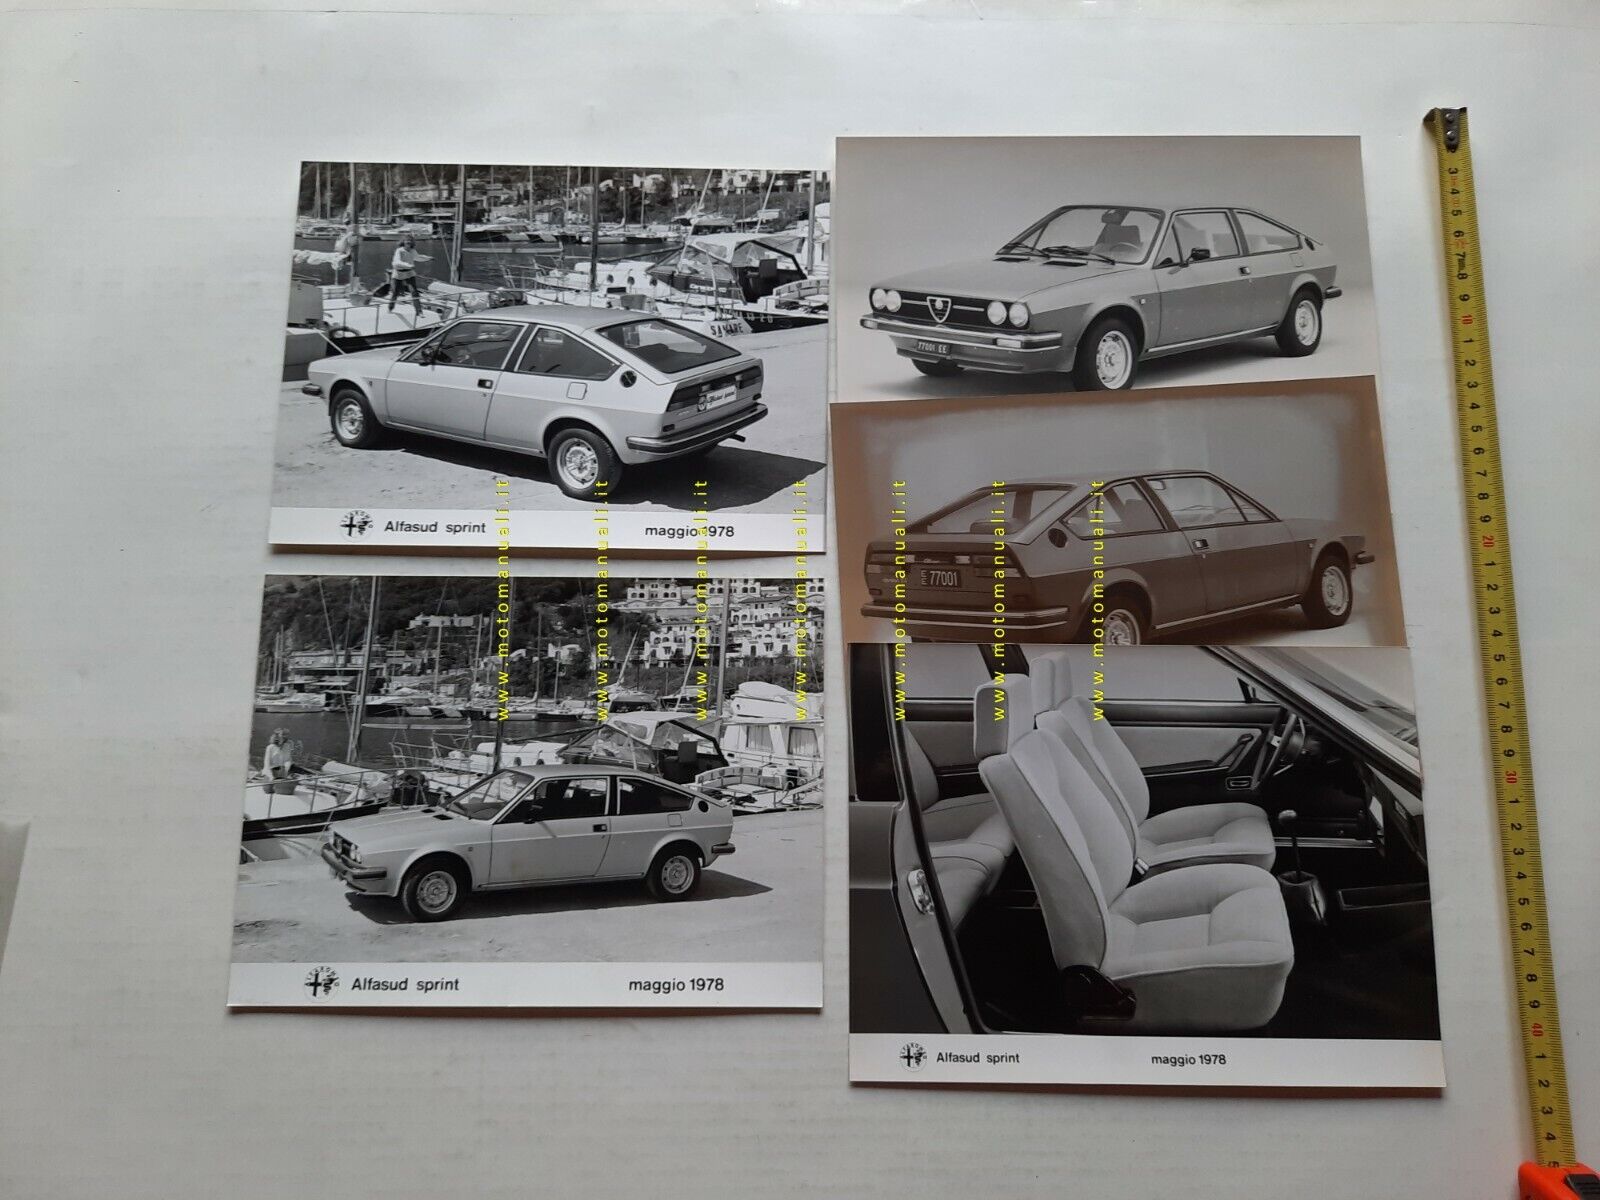 Alfa Romeo Alfasud Sprint 1978 lotto 5 foto cartella stampa no depliant